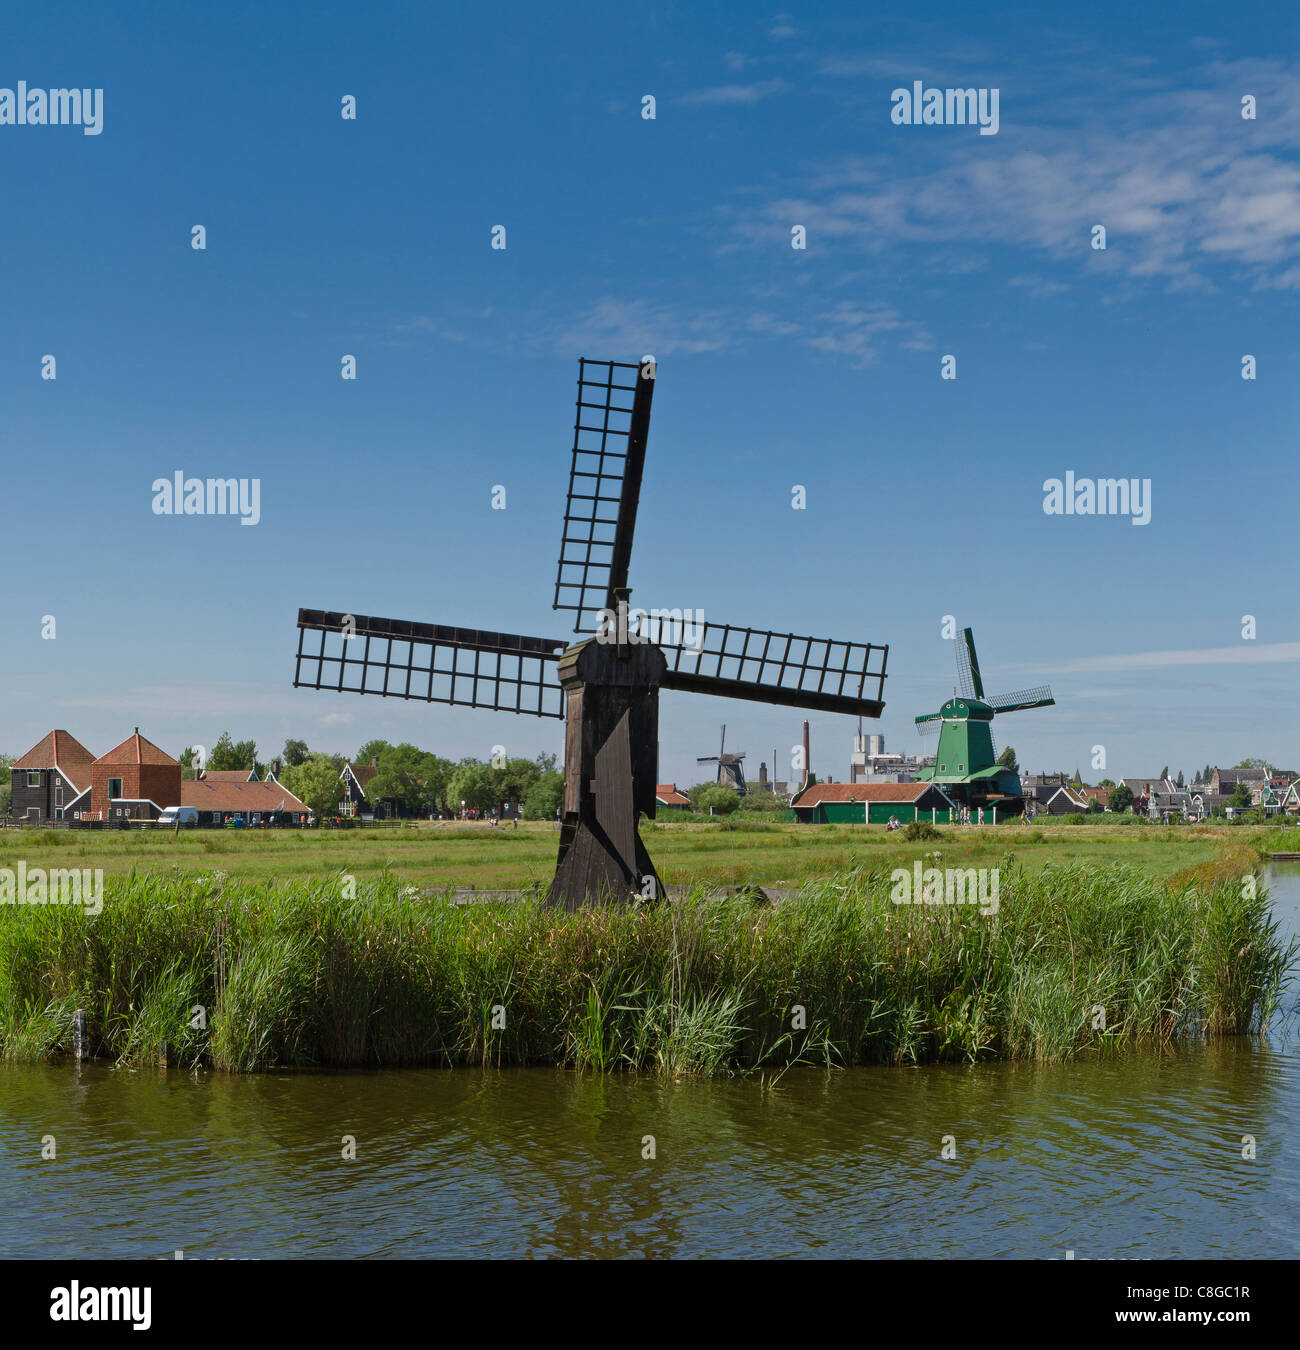 Netherlands, Europe, Holland, Zaandam, Windmills, open air, museum Zaanse Schans, windmill, field, meadow, summer, Stock Photo